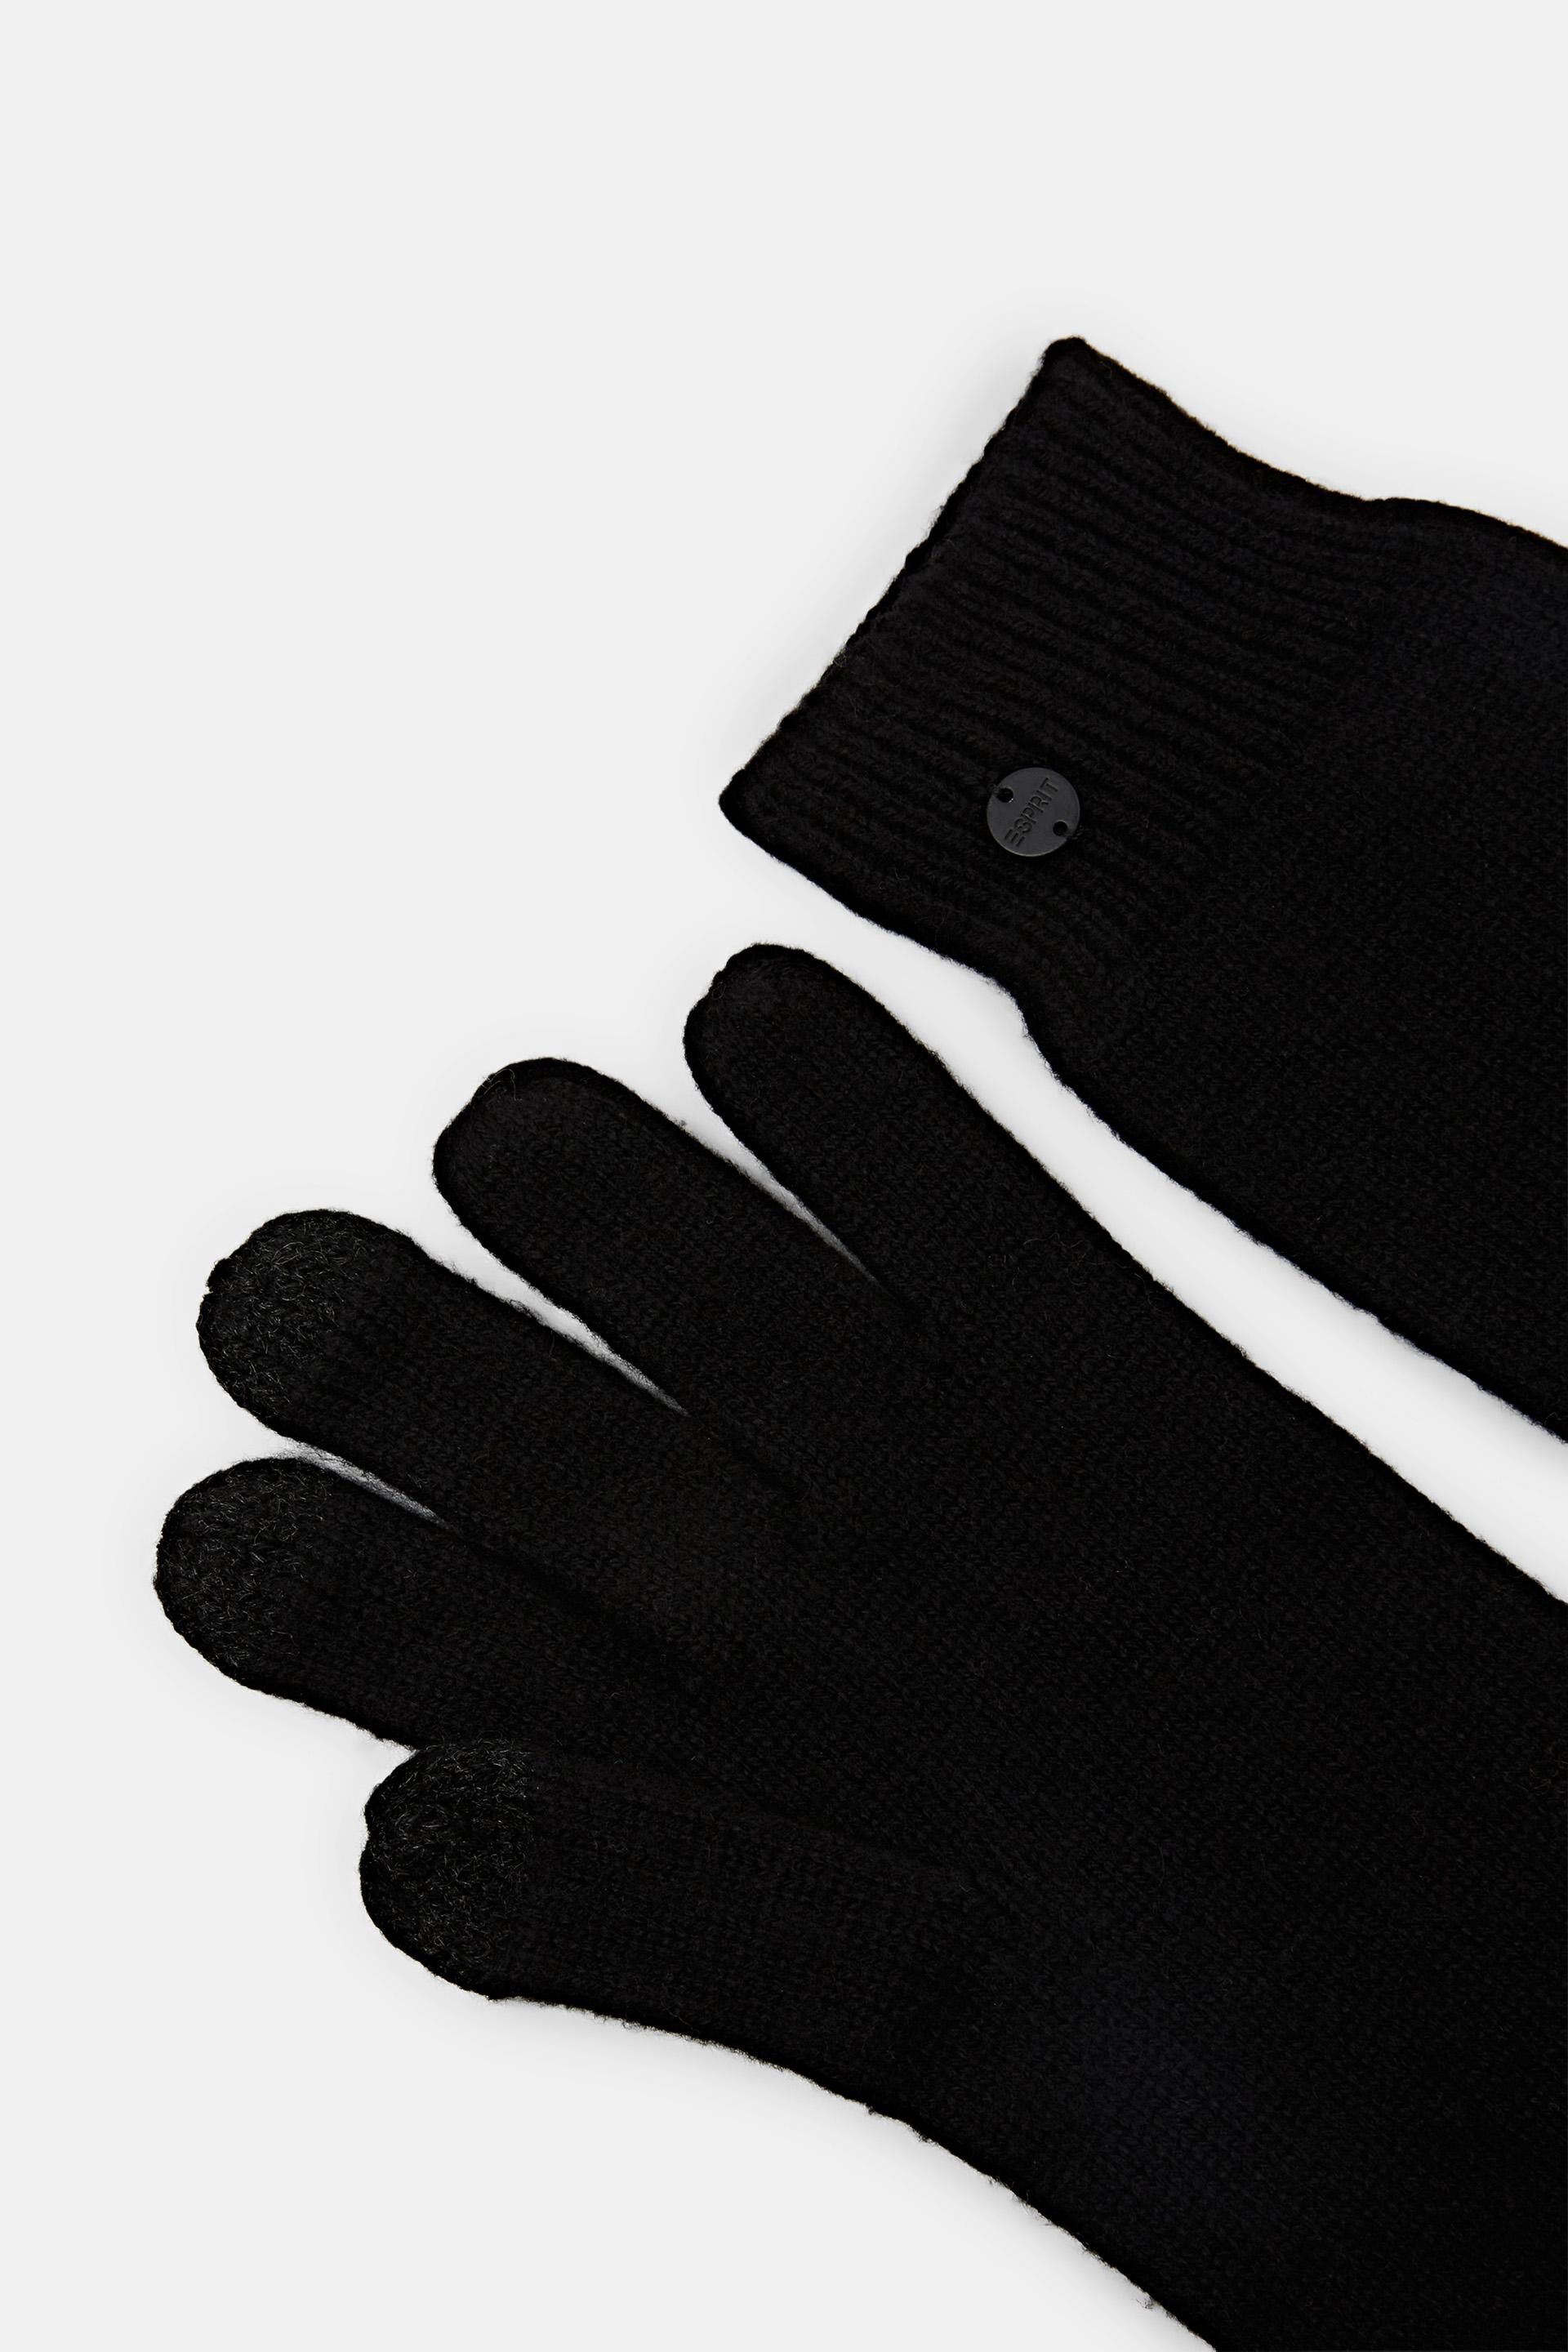 Esprit Online Store Handschuhe nicht aus Leder